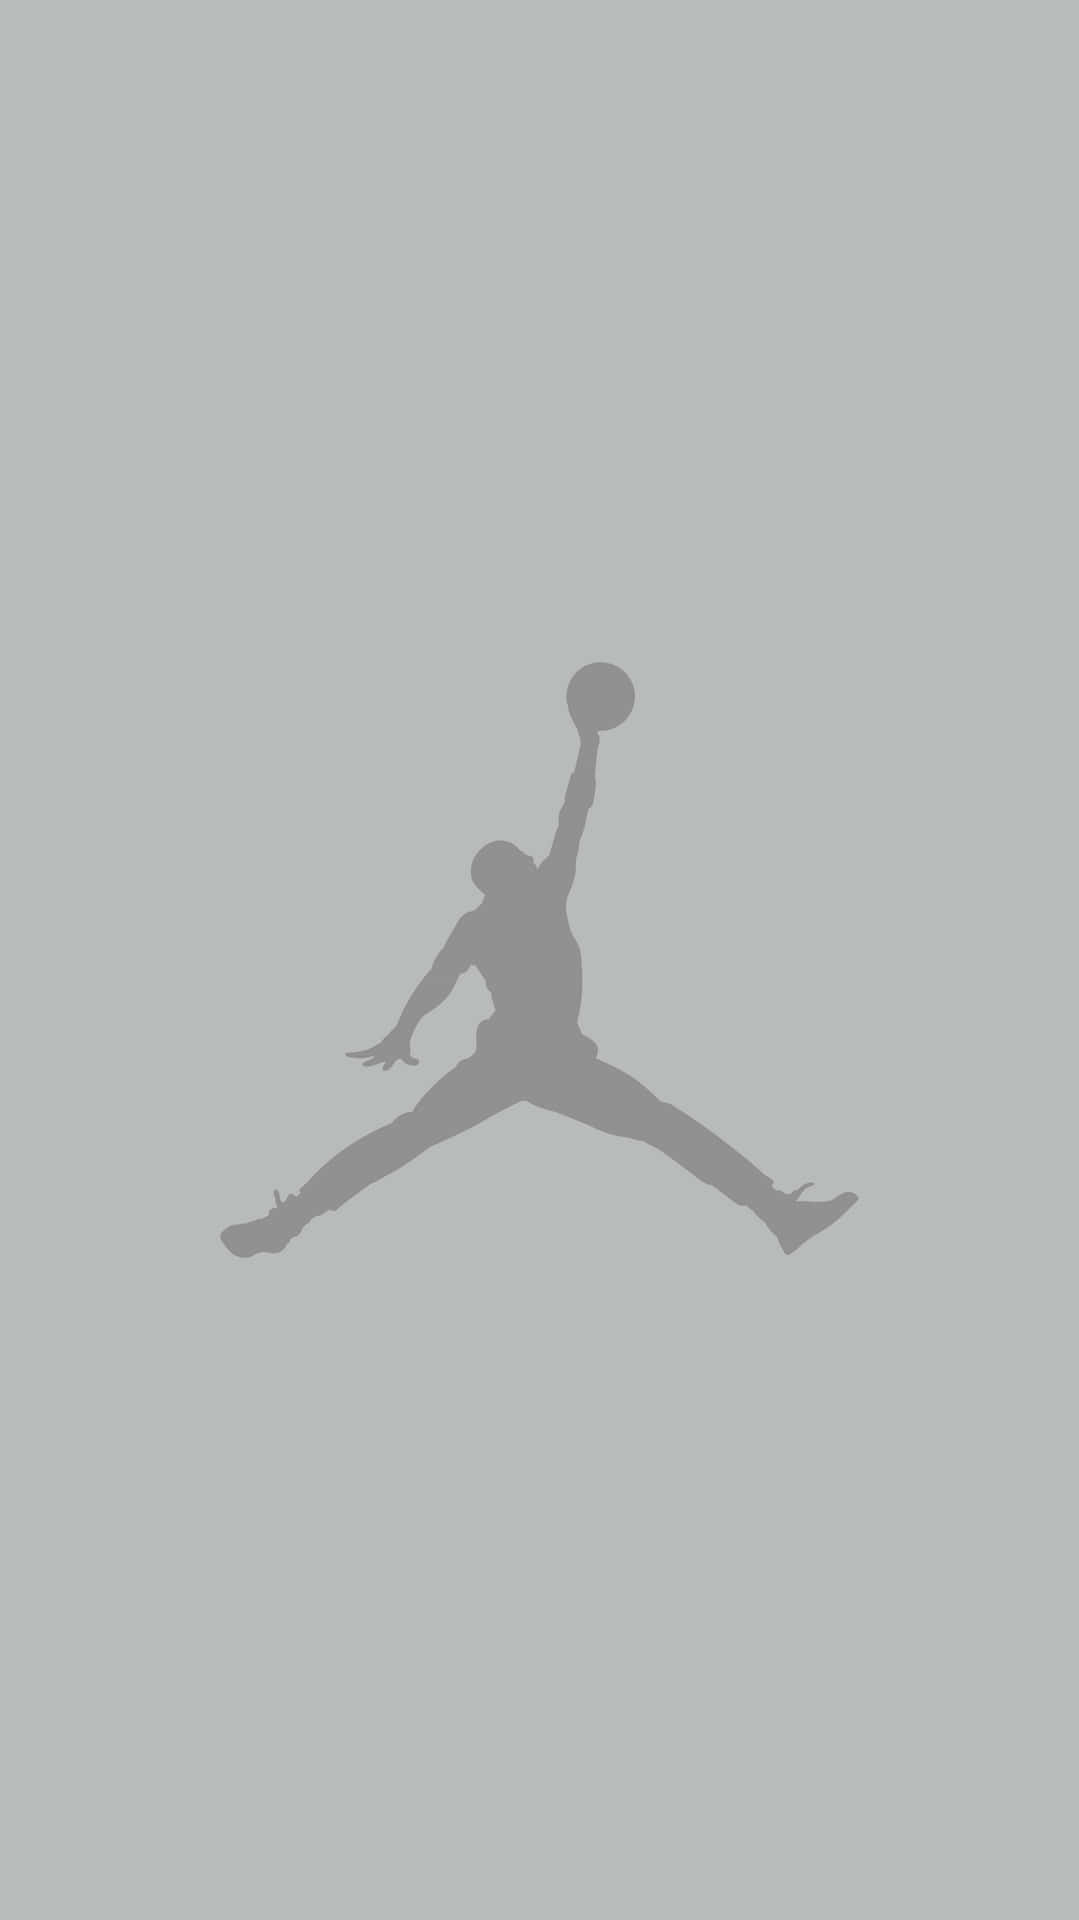 Unasilueta De Un Jugador De Baloncesto Saltando En El Aire Fondo de pantalla